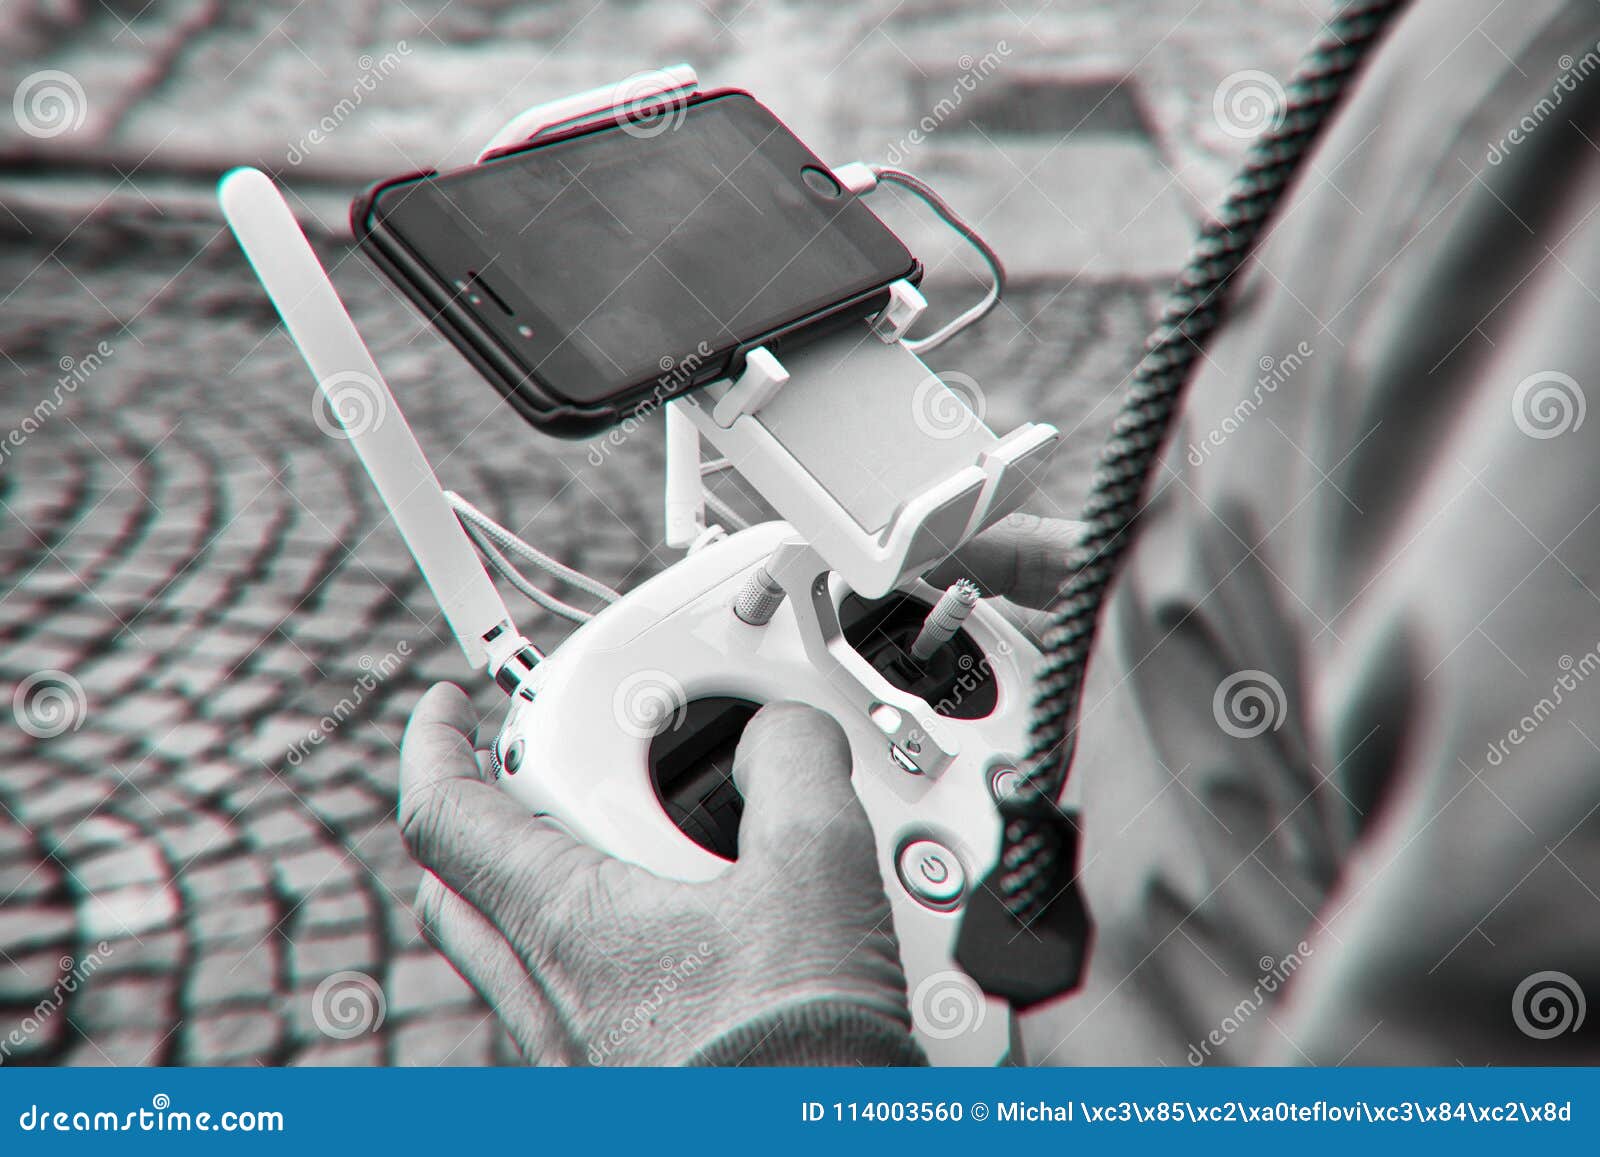 Uomo disponibile del telecomando del fuco Funzionamento dell'uomo del fuco di volo. Telecomando bianco in braccio, mosca del dron